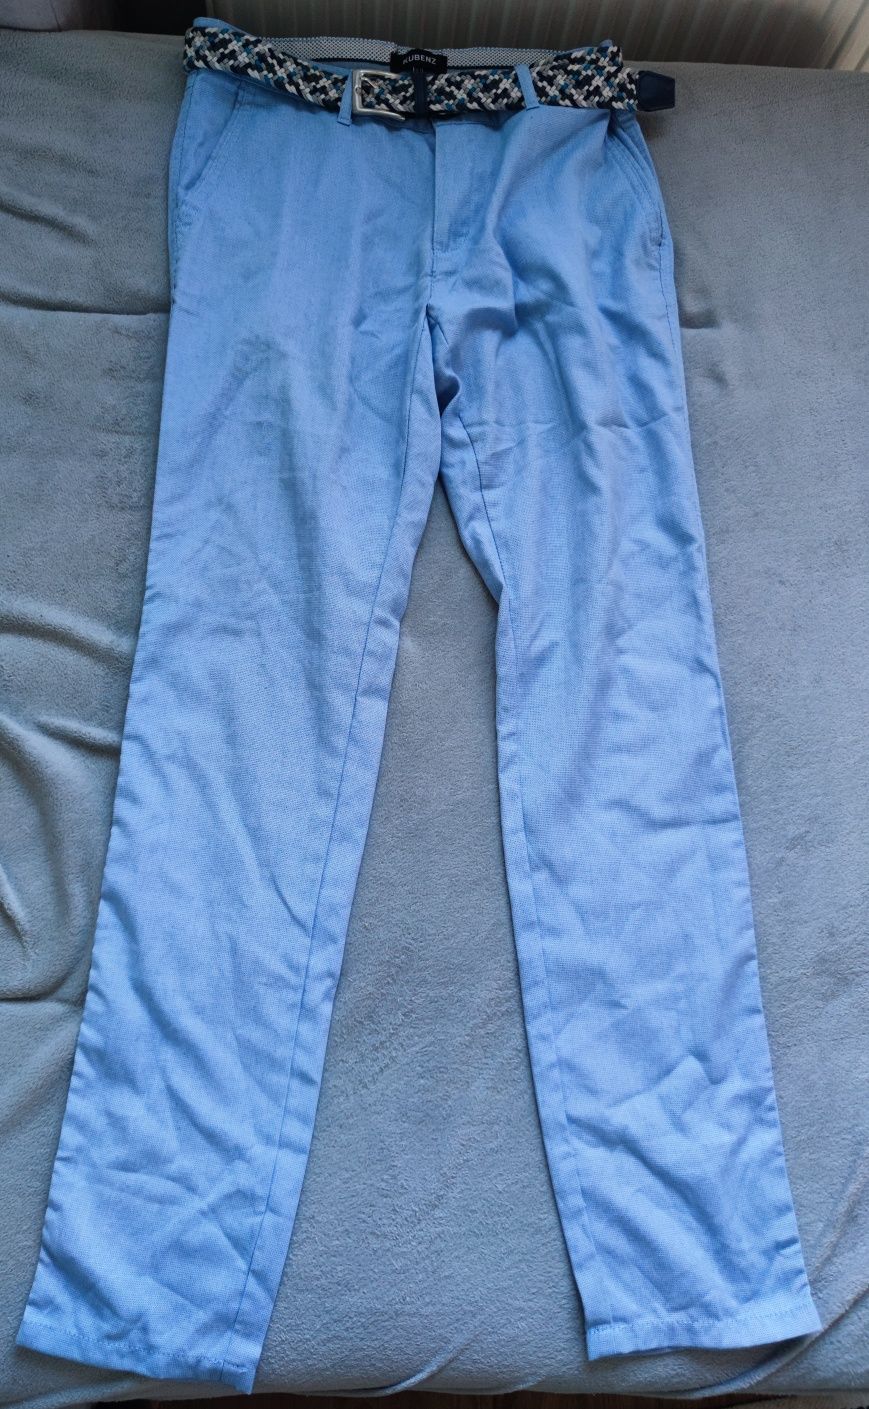 Spodnie ubraniowe męskie z paskiem Kubenz